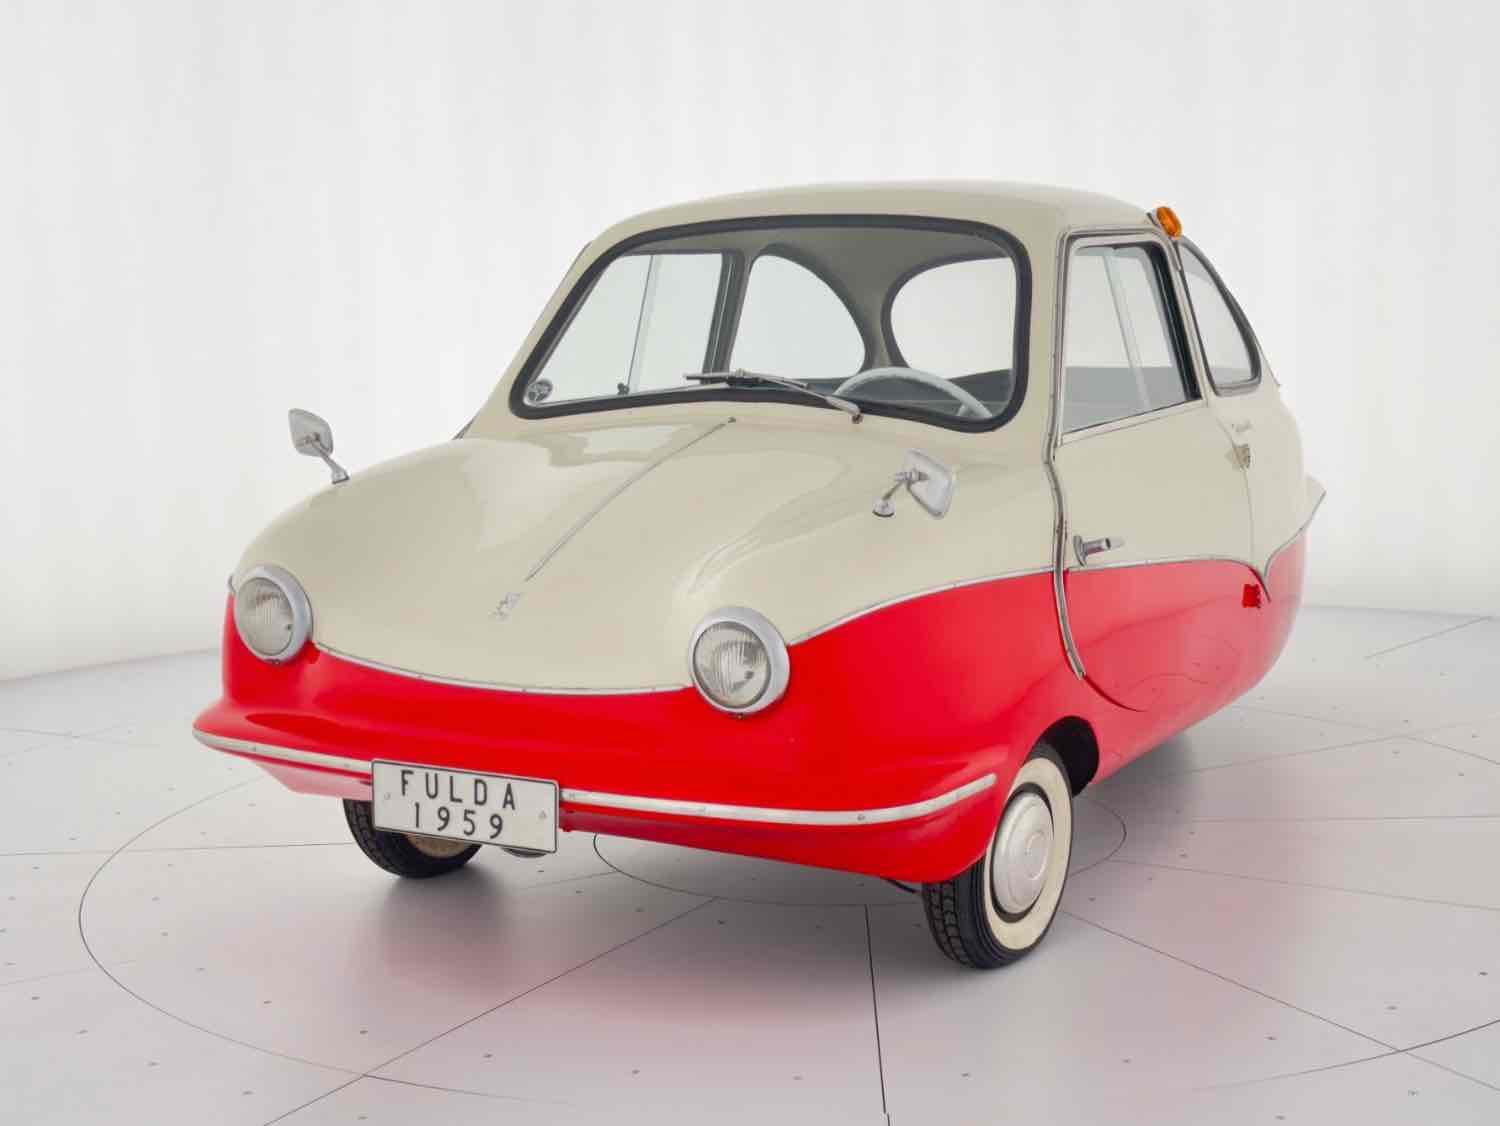 1959 - Fulda Fuldamobil Series 7 - NO RESERVE